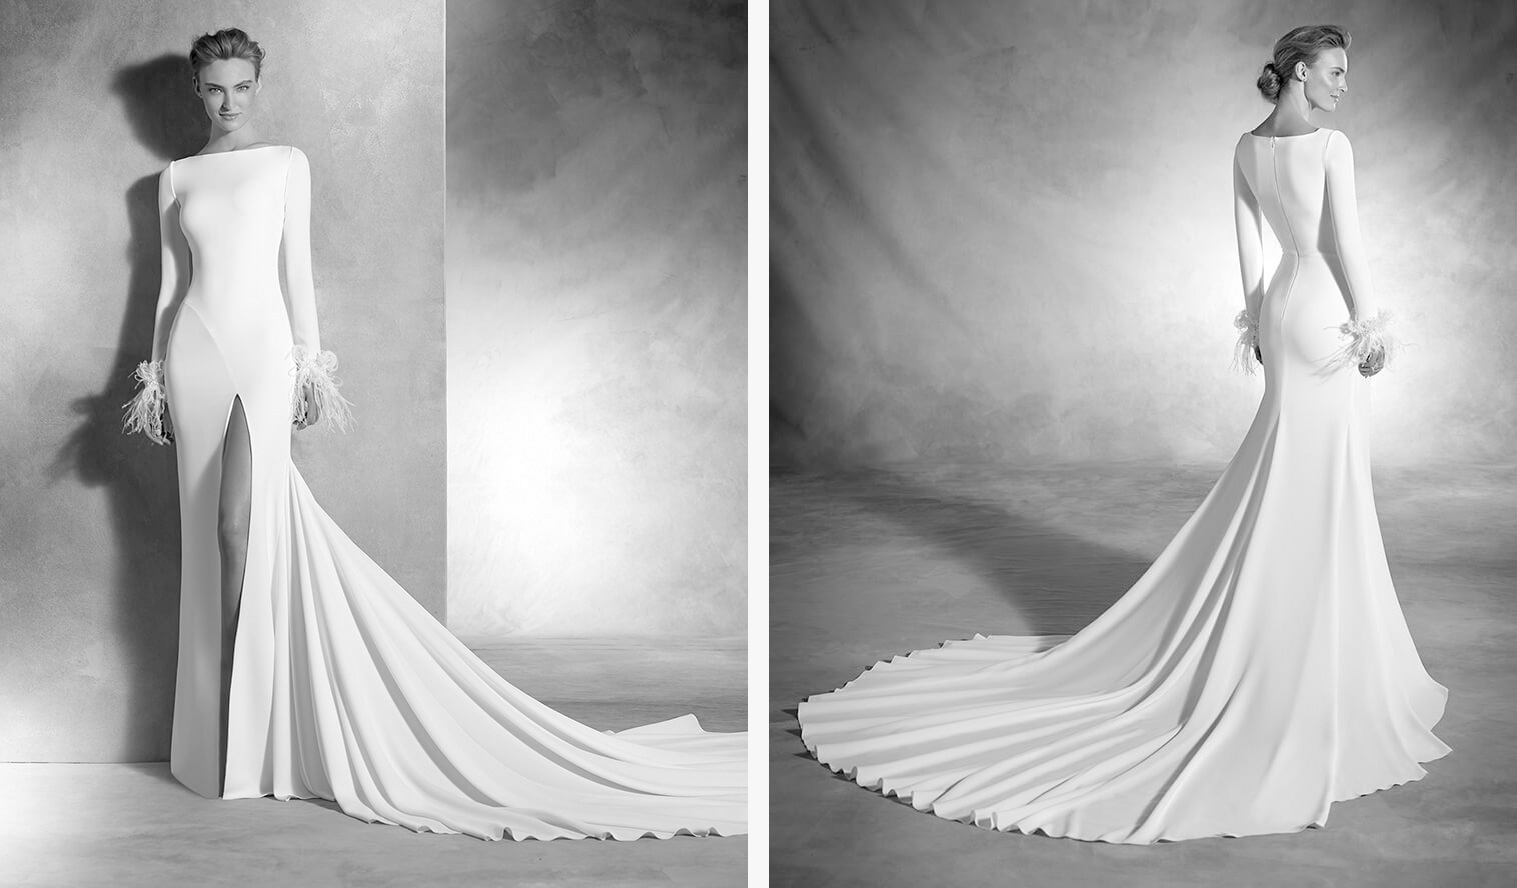 Deslumbrante vestido de noiva em crepe e organza de silhueta sereia. O seu decote em barco, a manga comprida com aplicações de pedraria e penas, e a saia aberta conferem sensualidade a este vestido de estilo moderno.